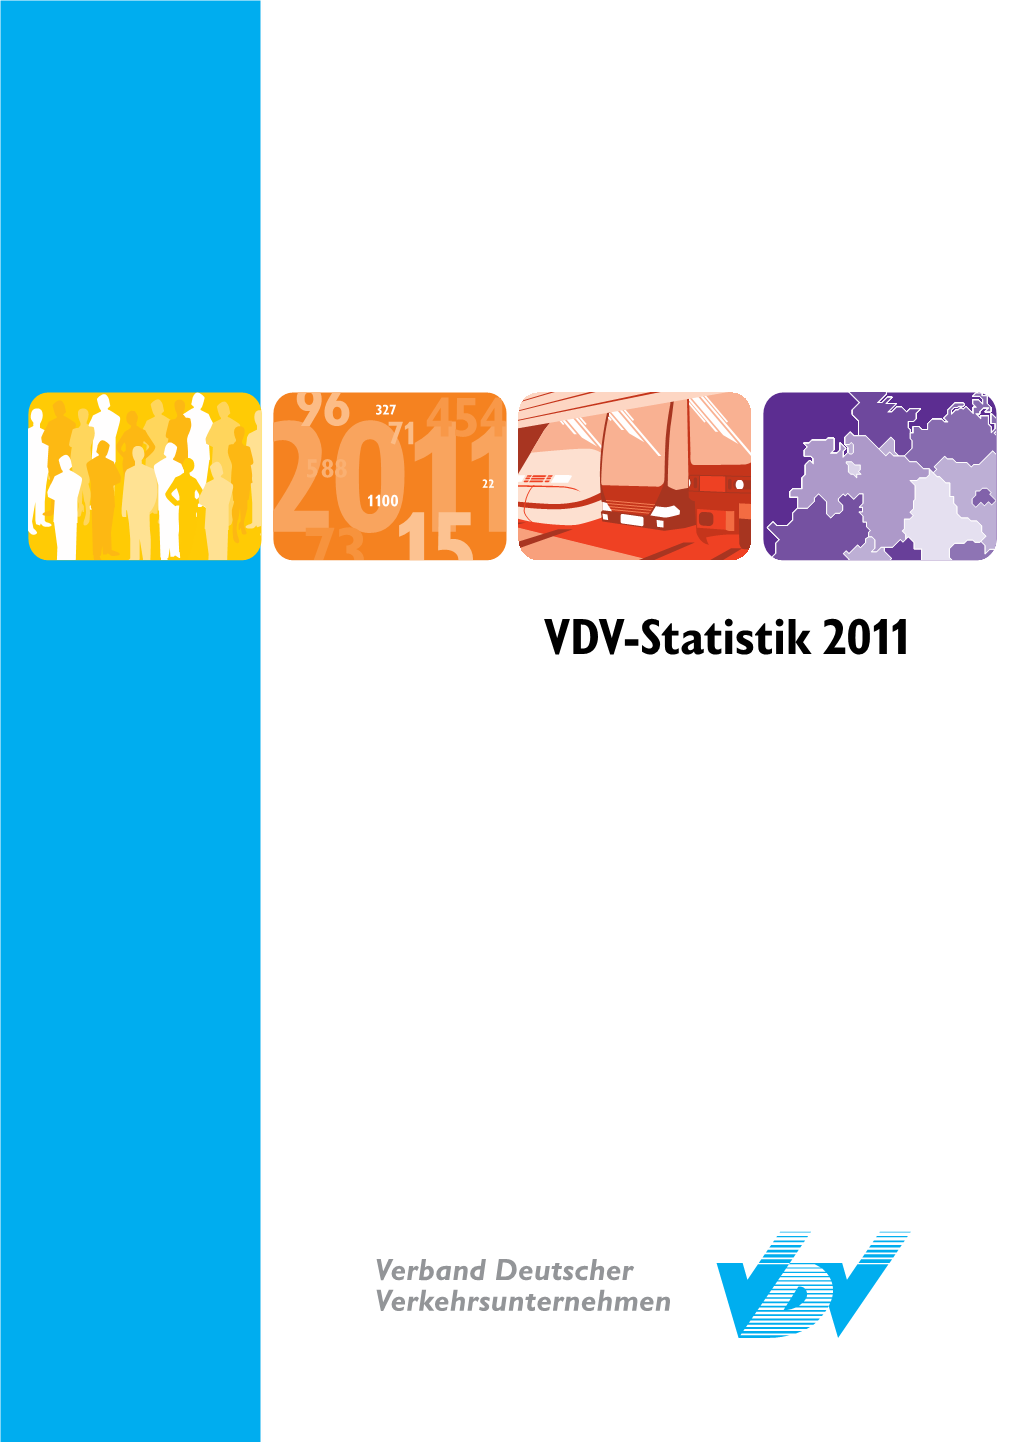 VDV-Statistik 2011